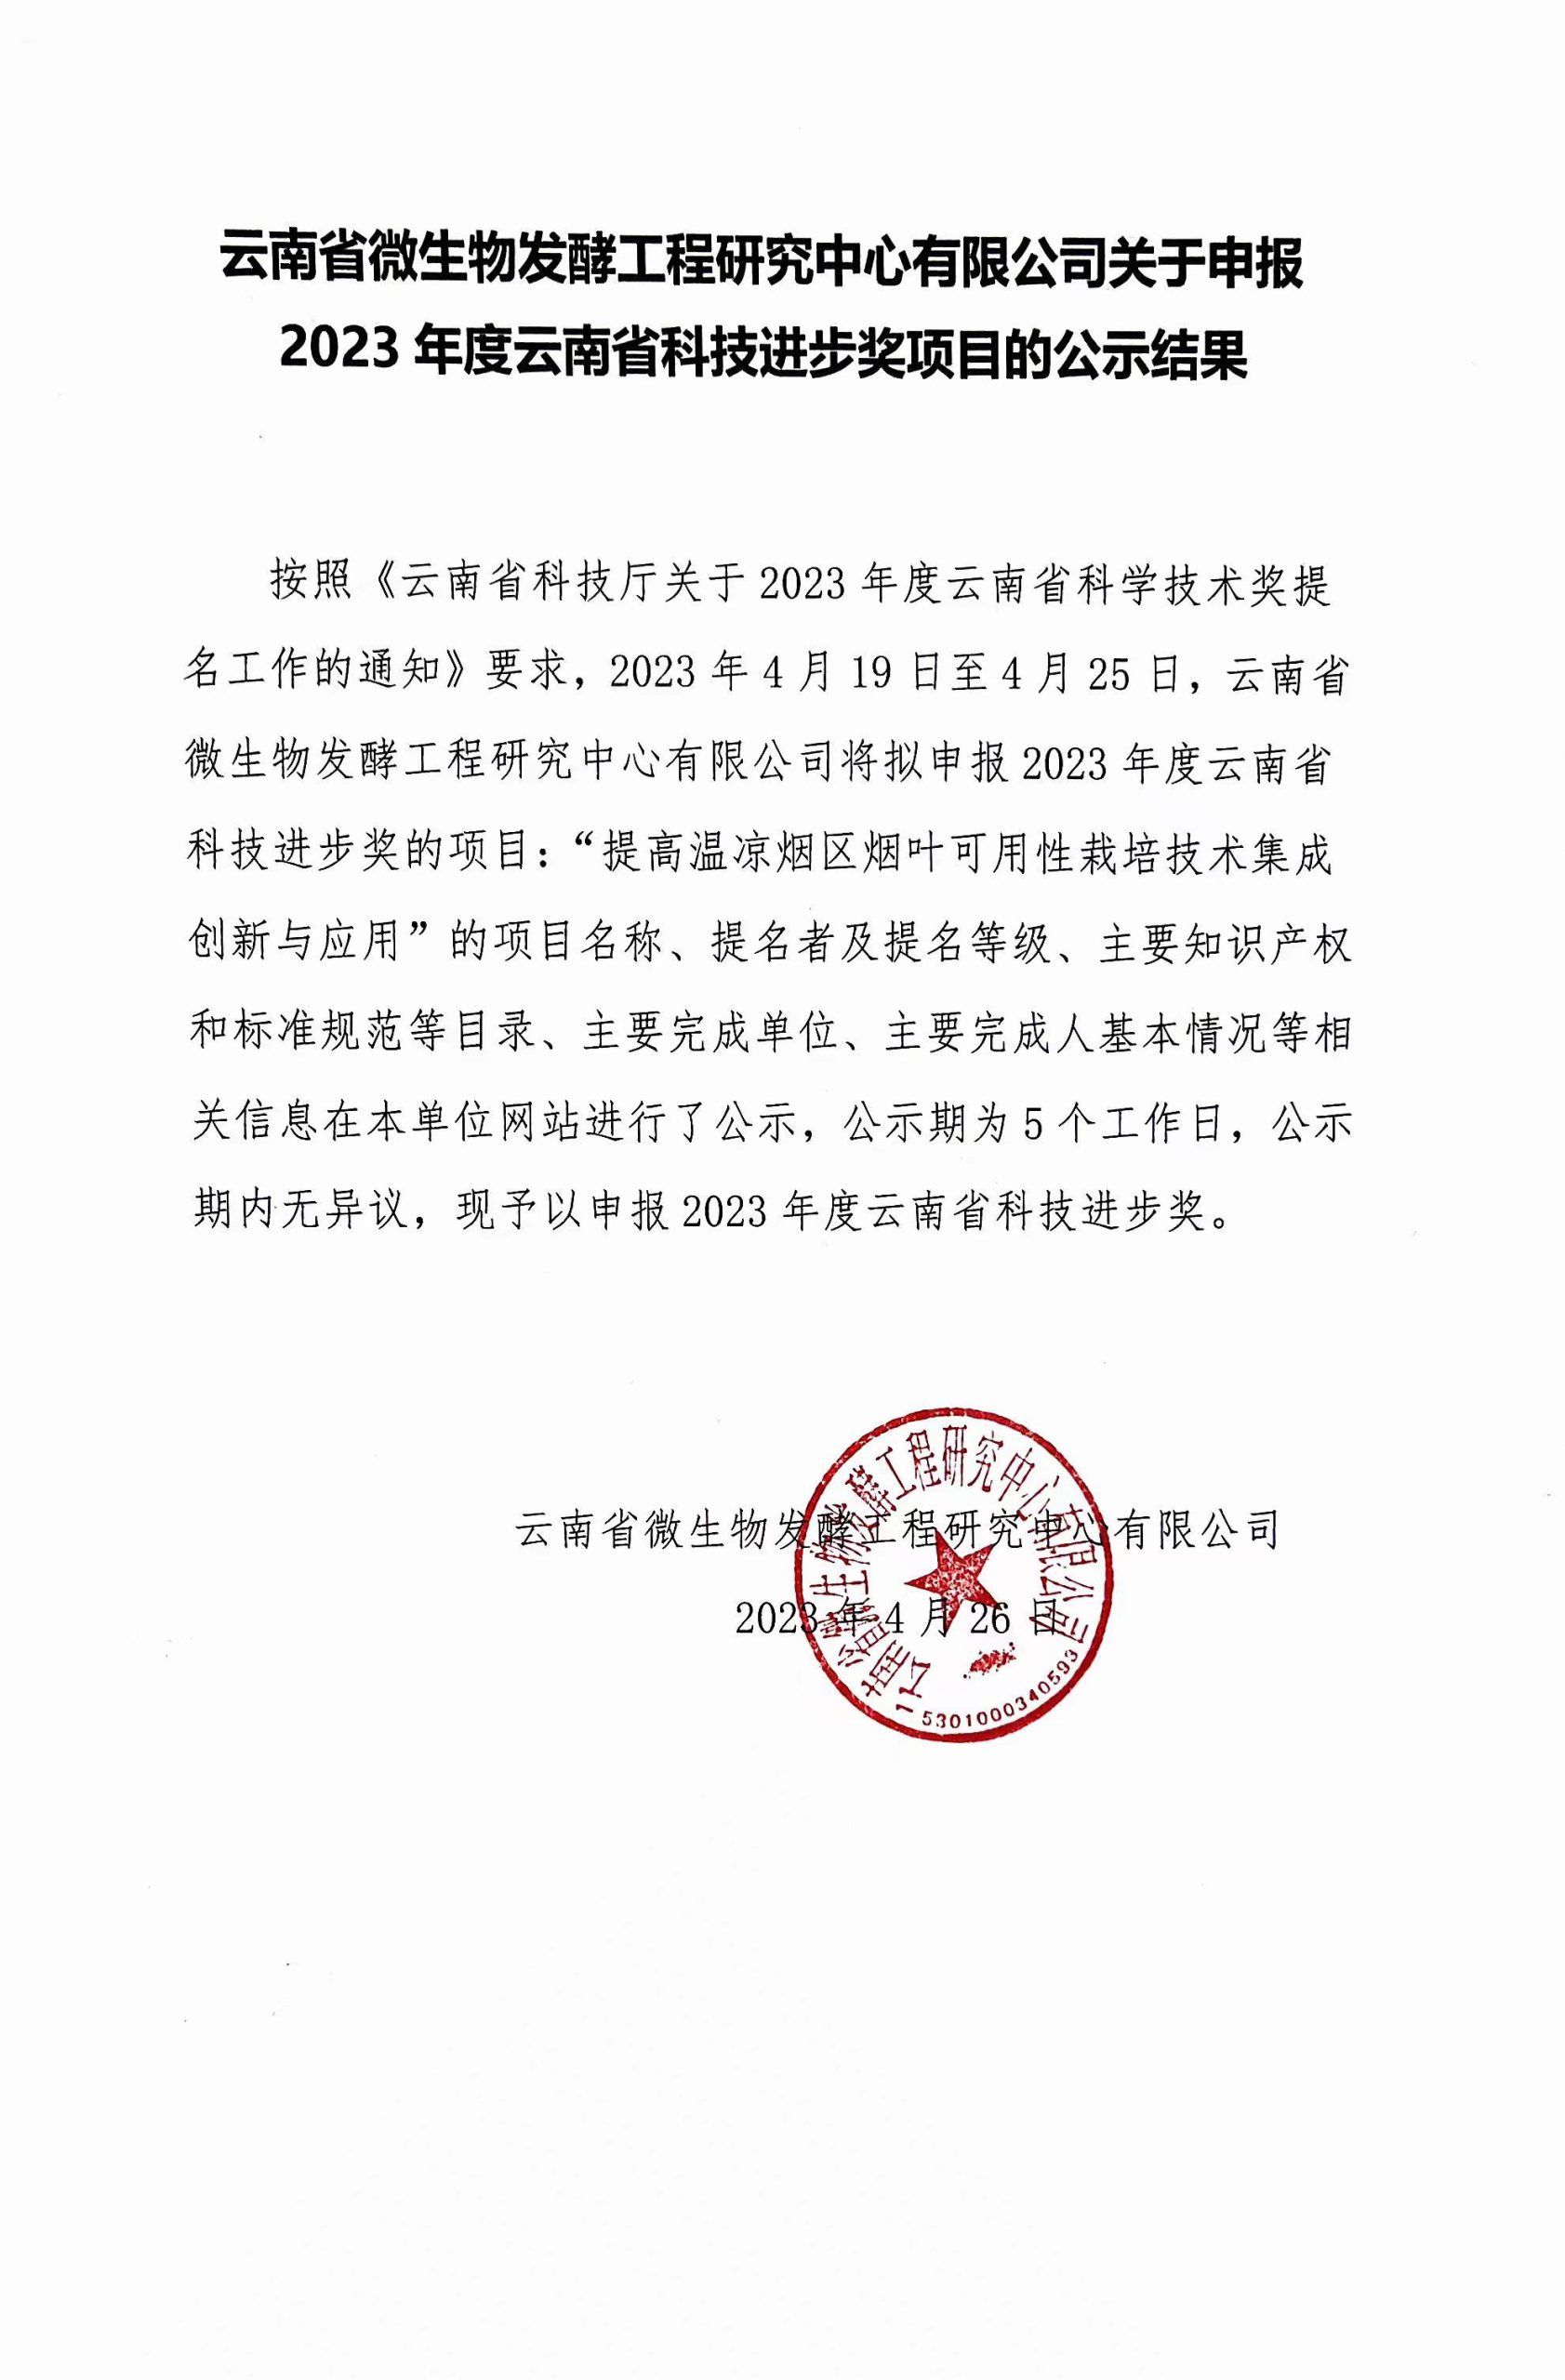 云南省微生物发酵工程研究中心有限公司关于申报2023年度云南省科技进步奖项目的公示结果